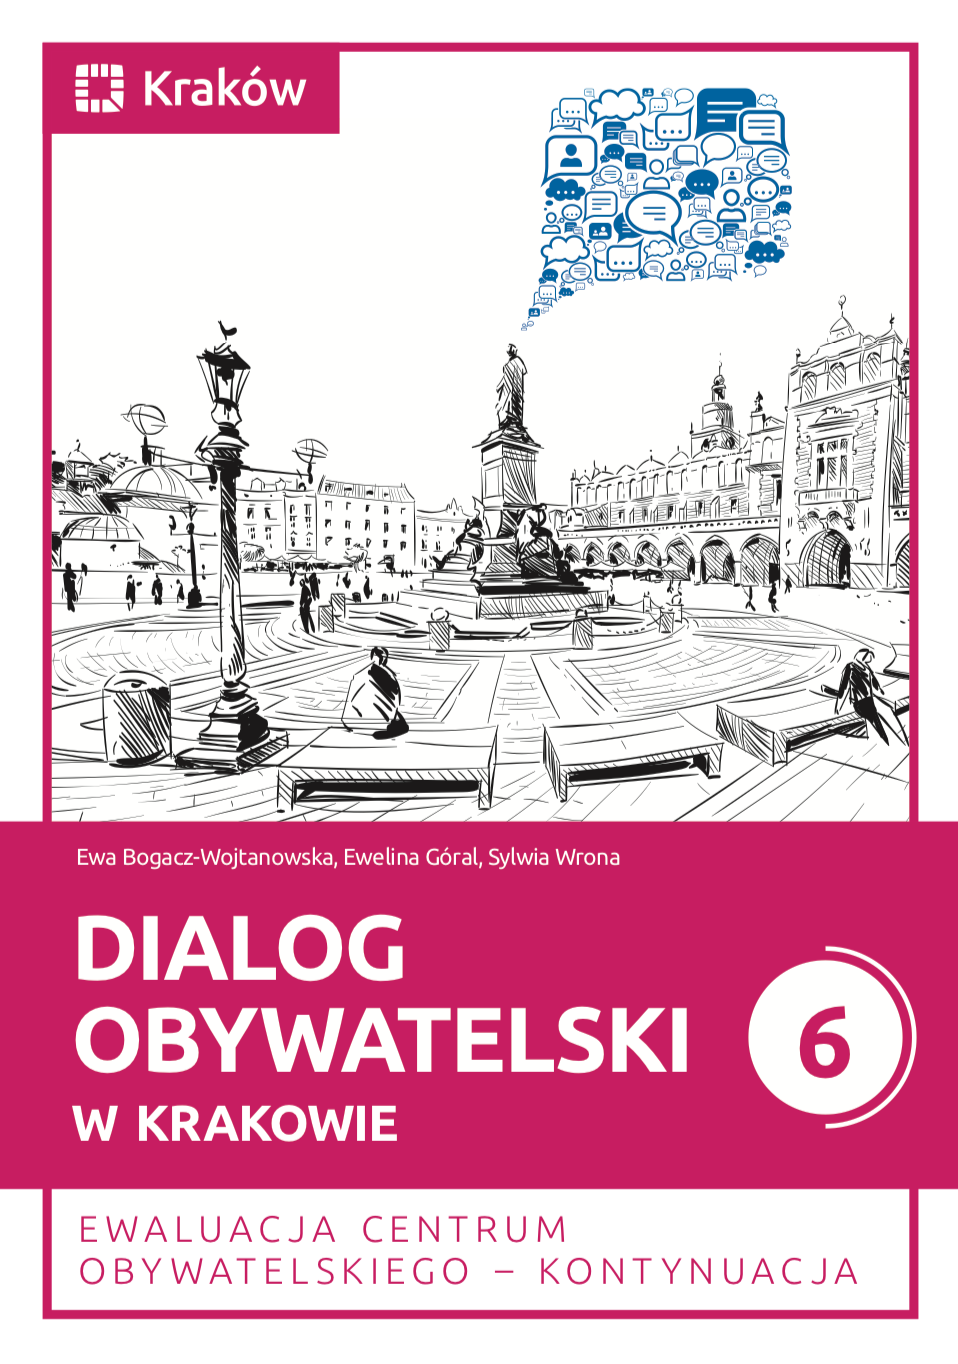 okładka książki "Dialog obywatelski w Krakowie 6. Ewaluacja Centrum Obywatelskiego - kontynuacja"